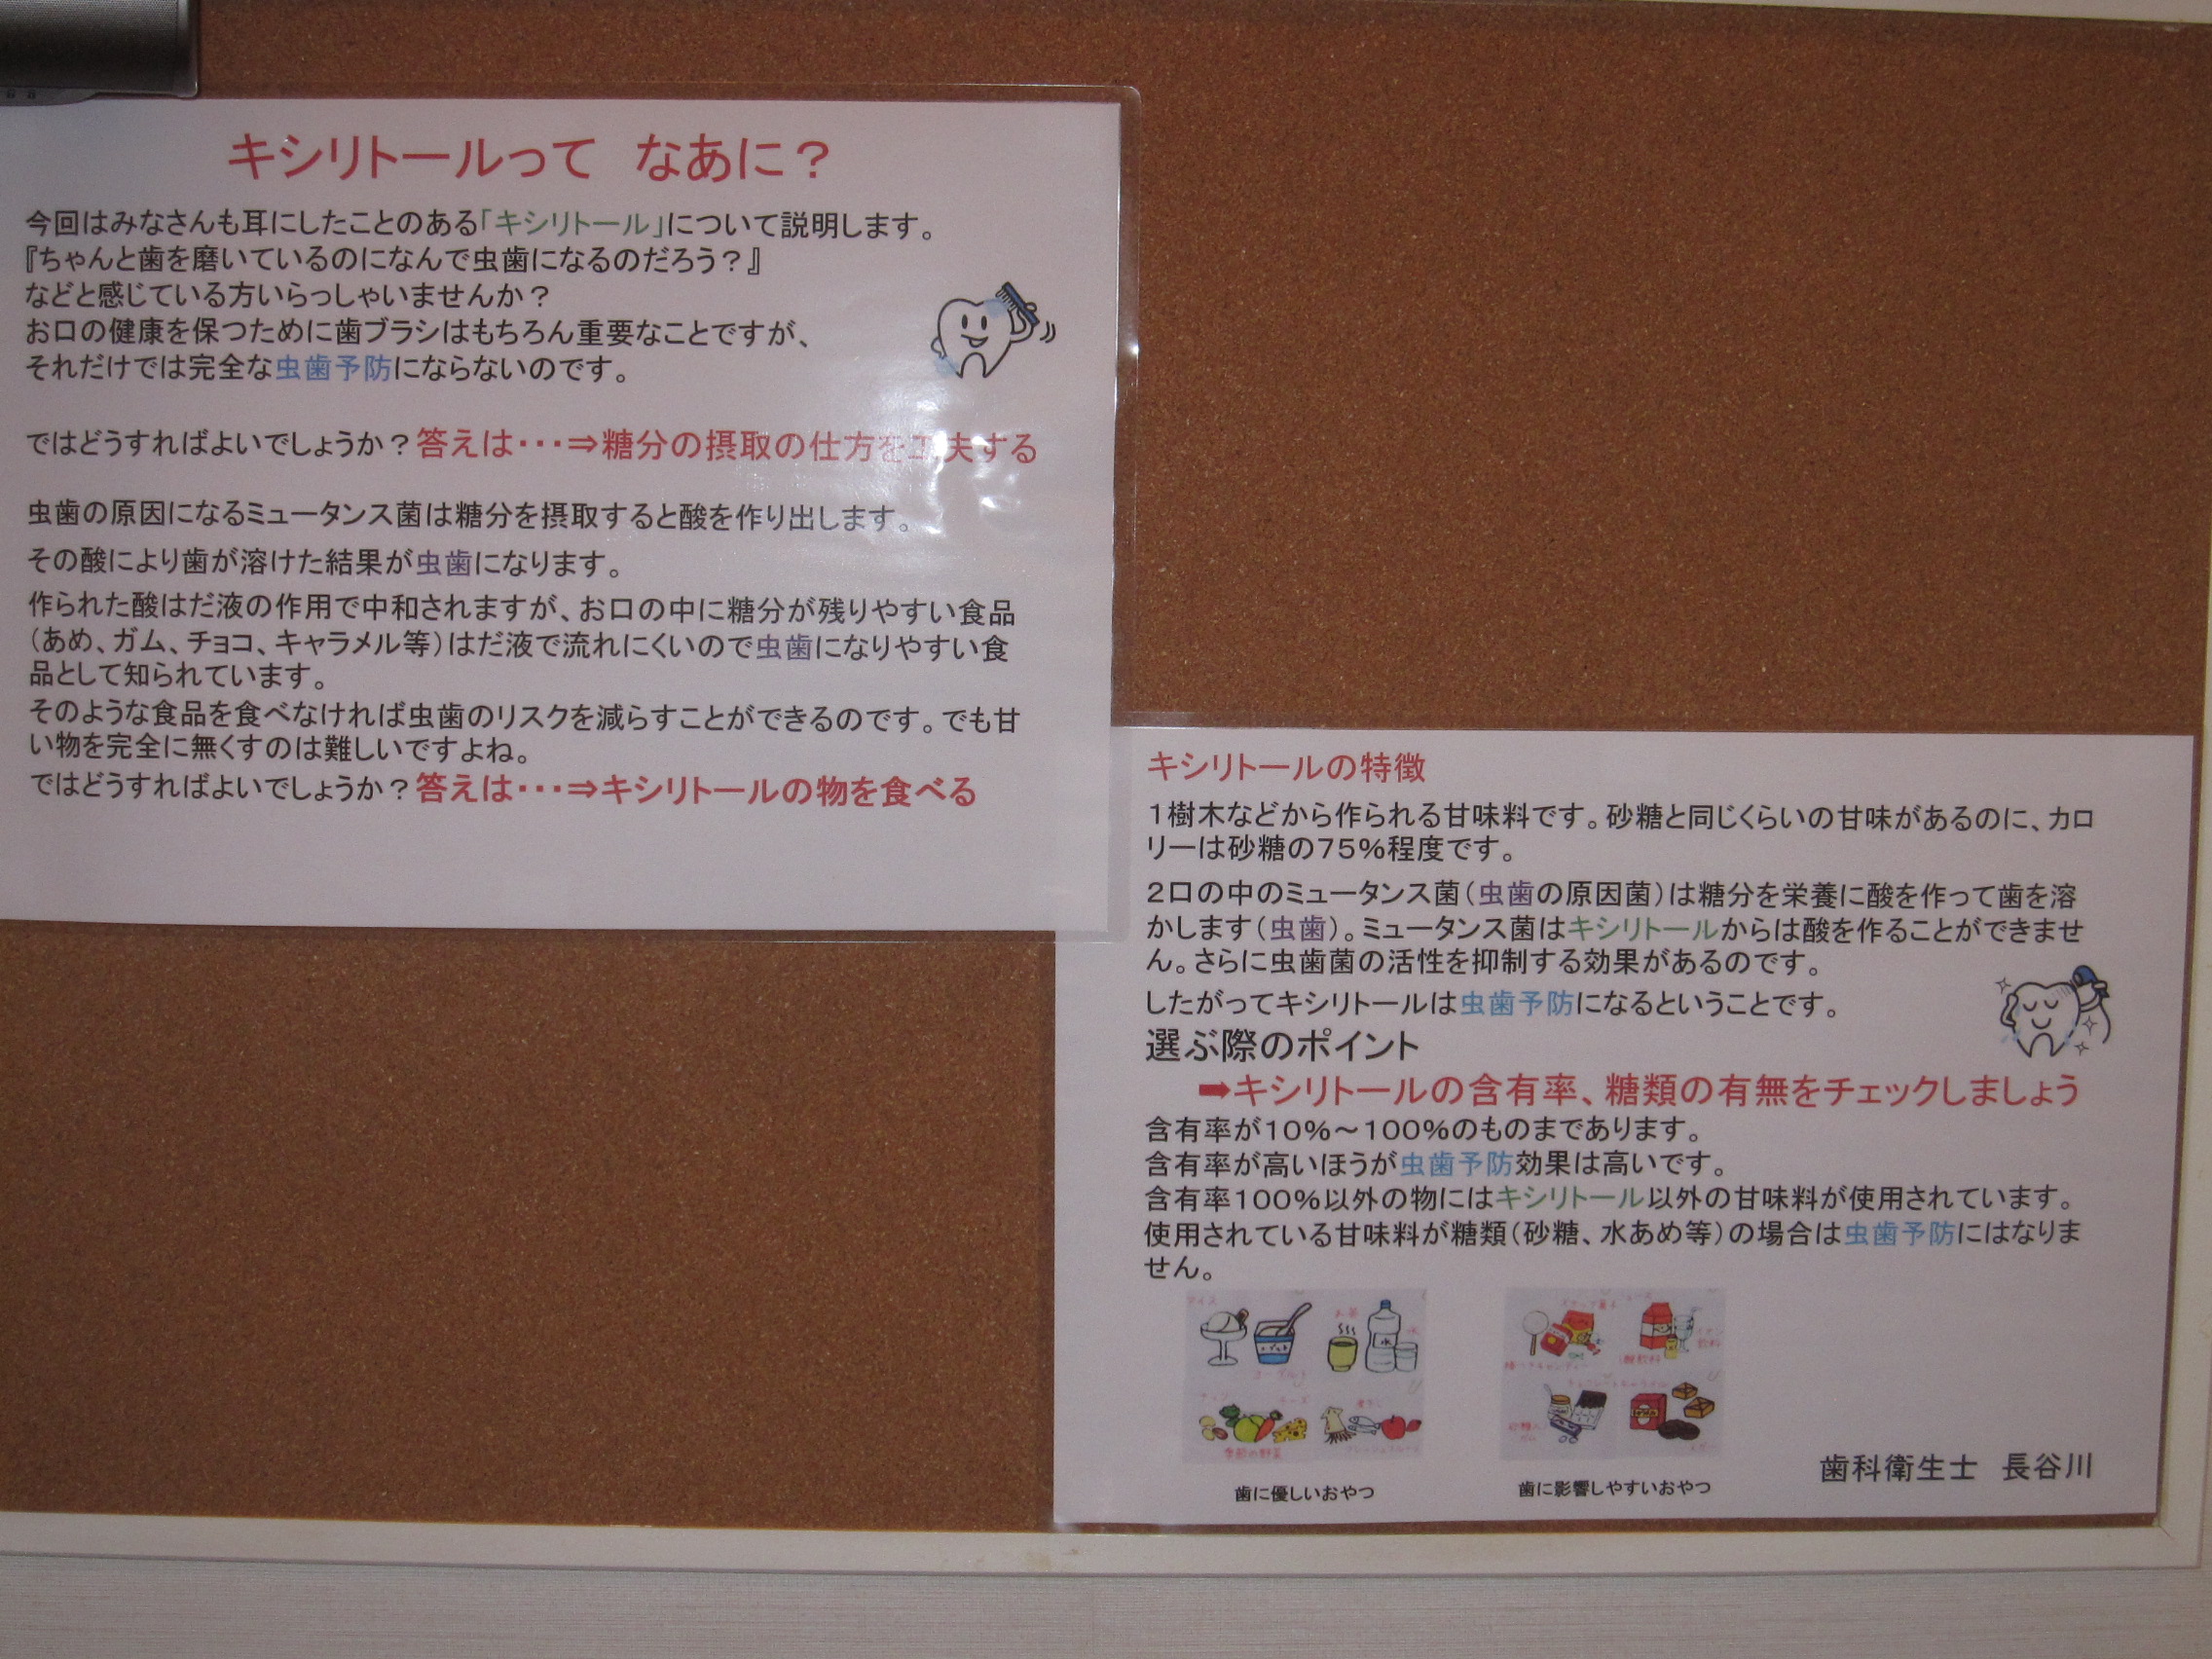 ちりゅう京極歯科 | 愛知県知立市のやさしい歯科医院で小児歯科・インプラント治療を